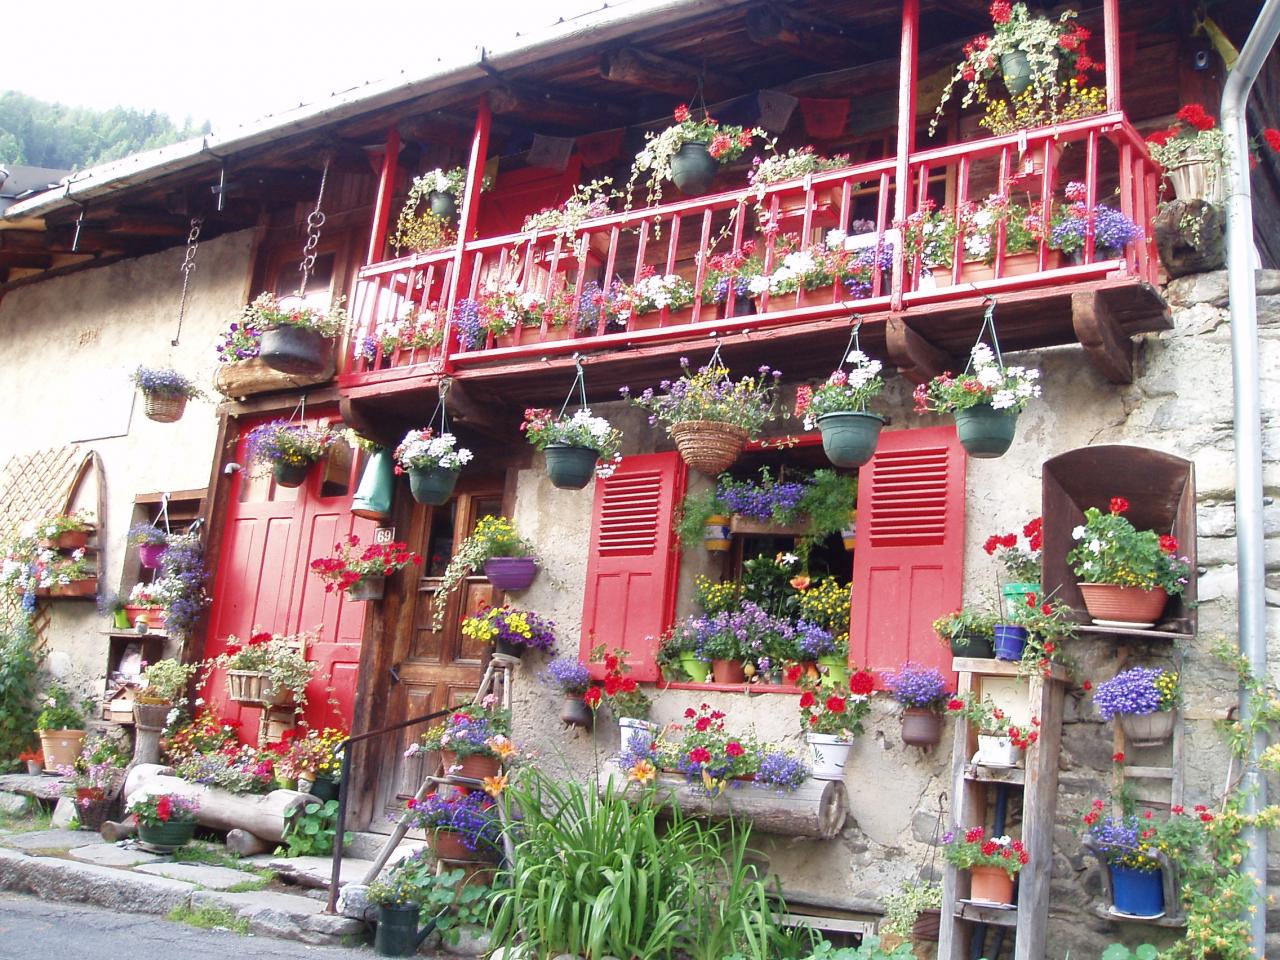 Une maison très fleurie à Montroc, village de départ de notre périple